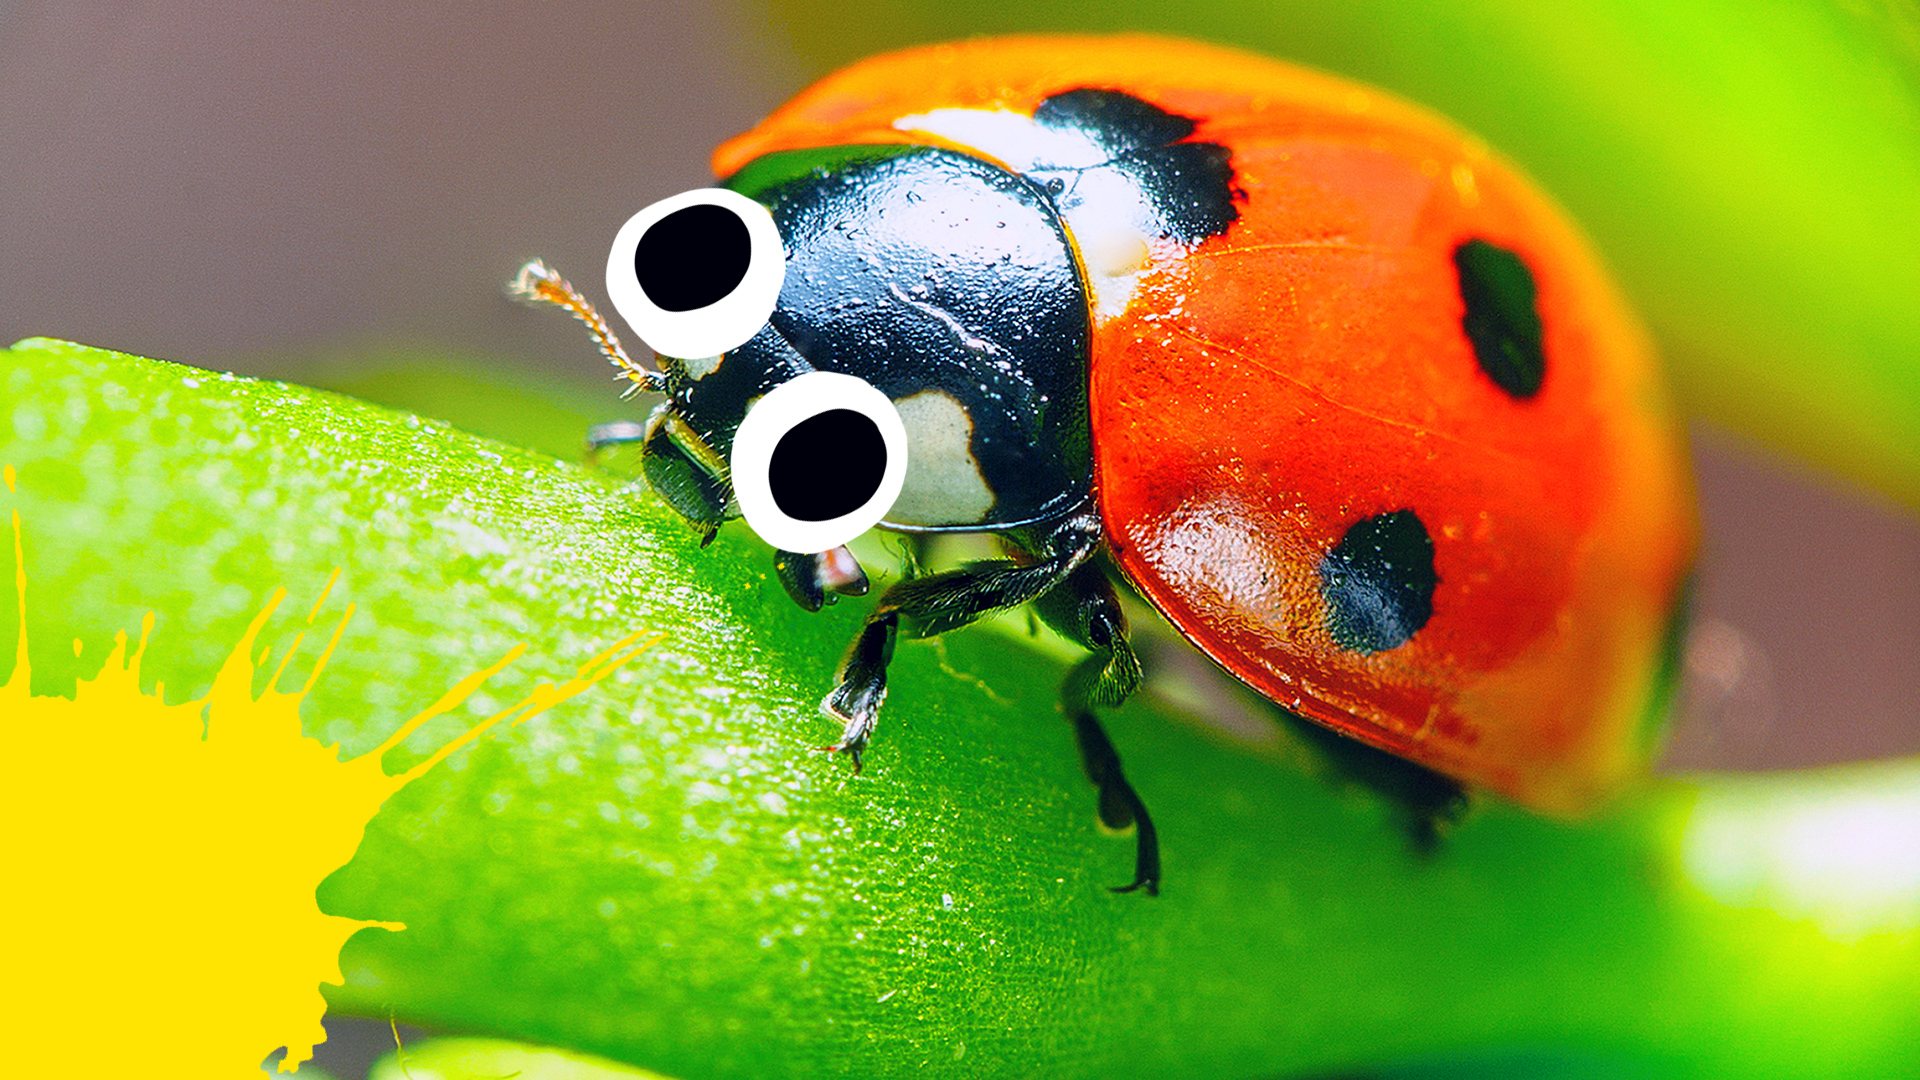 Ladybug with splats